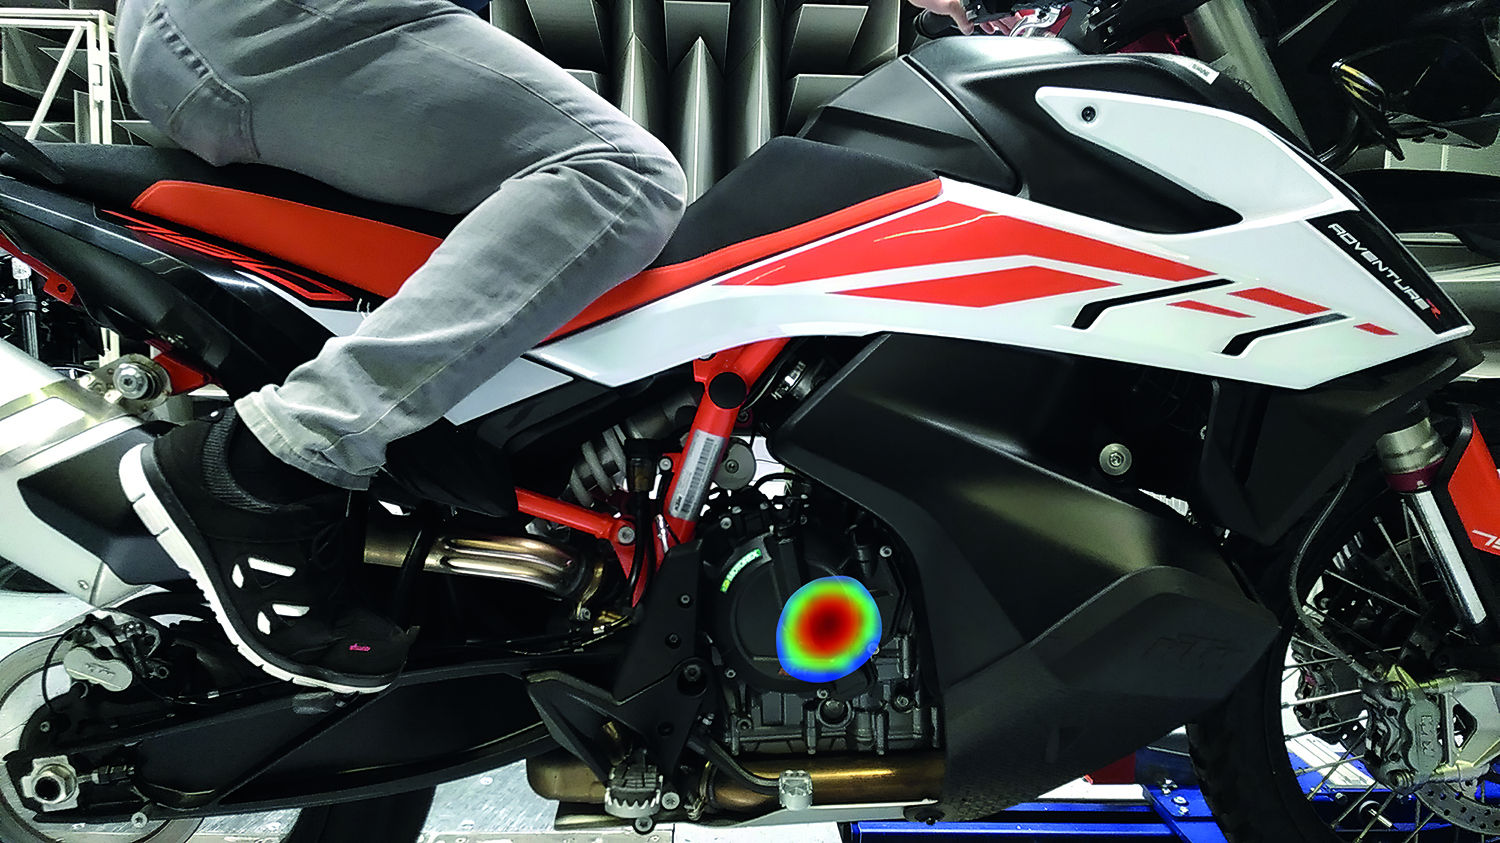 Seven Bel: Anwendung der "Lärmfotografie" bei Motorrad-Hersteller KTM